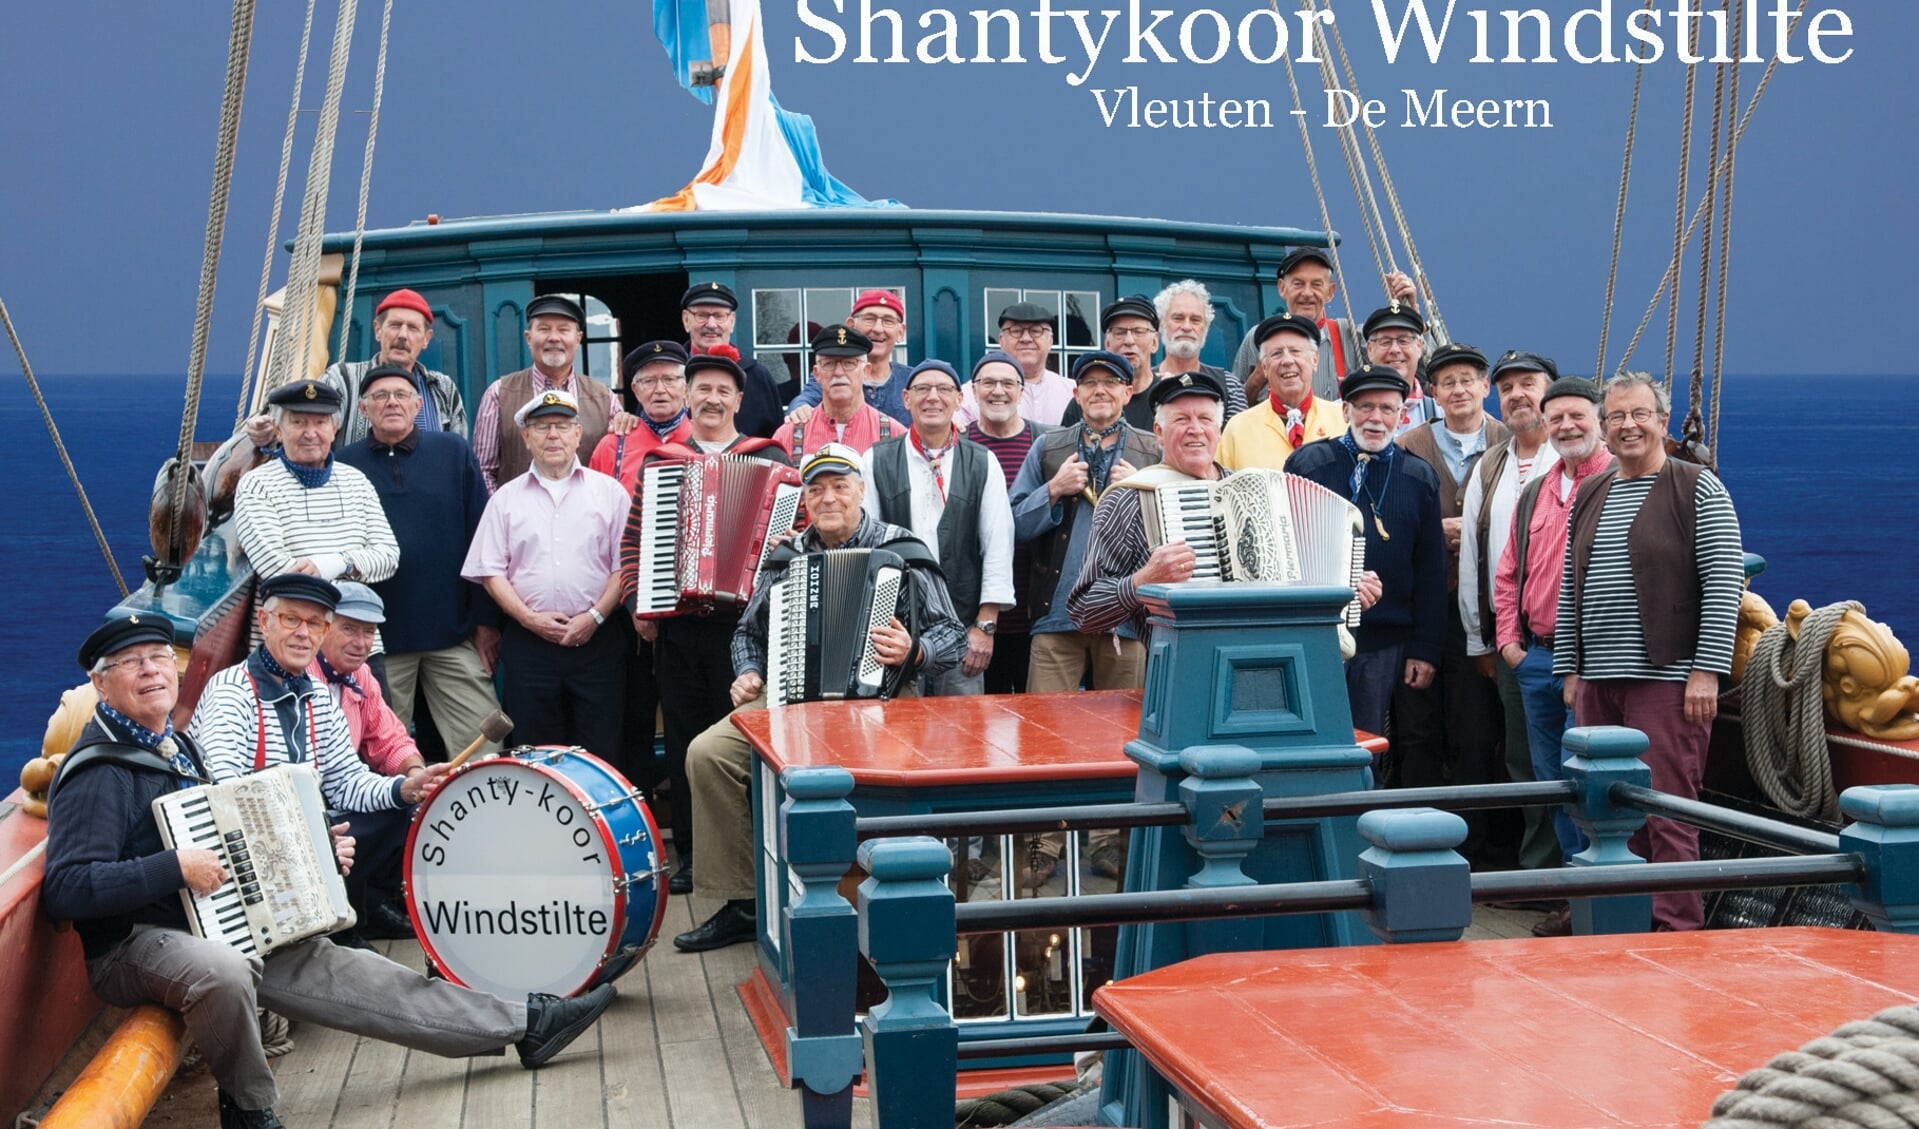 De bemanning van het Shanty koor Windstilte